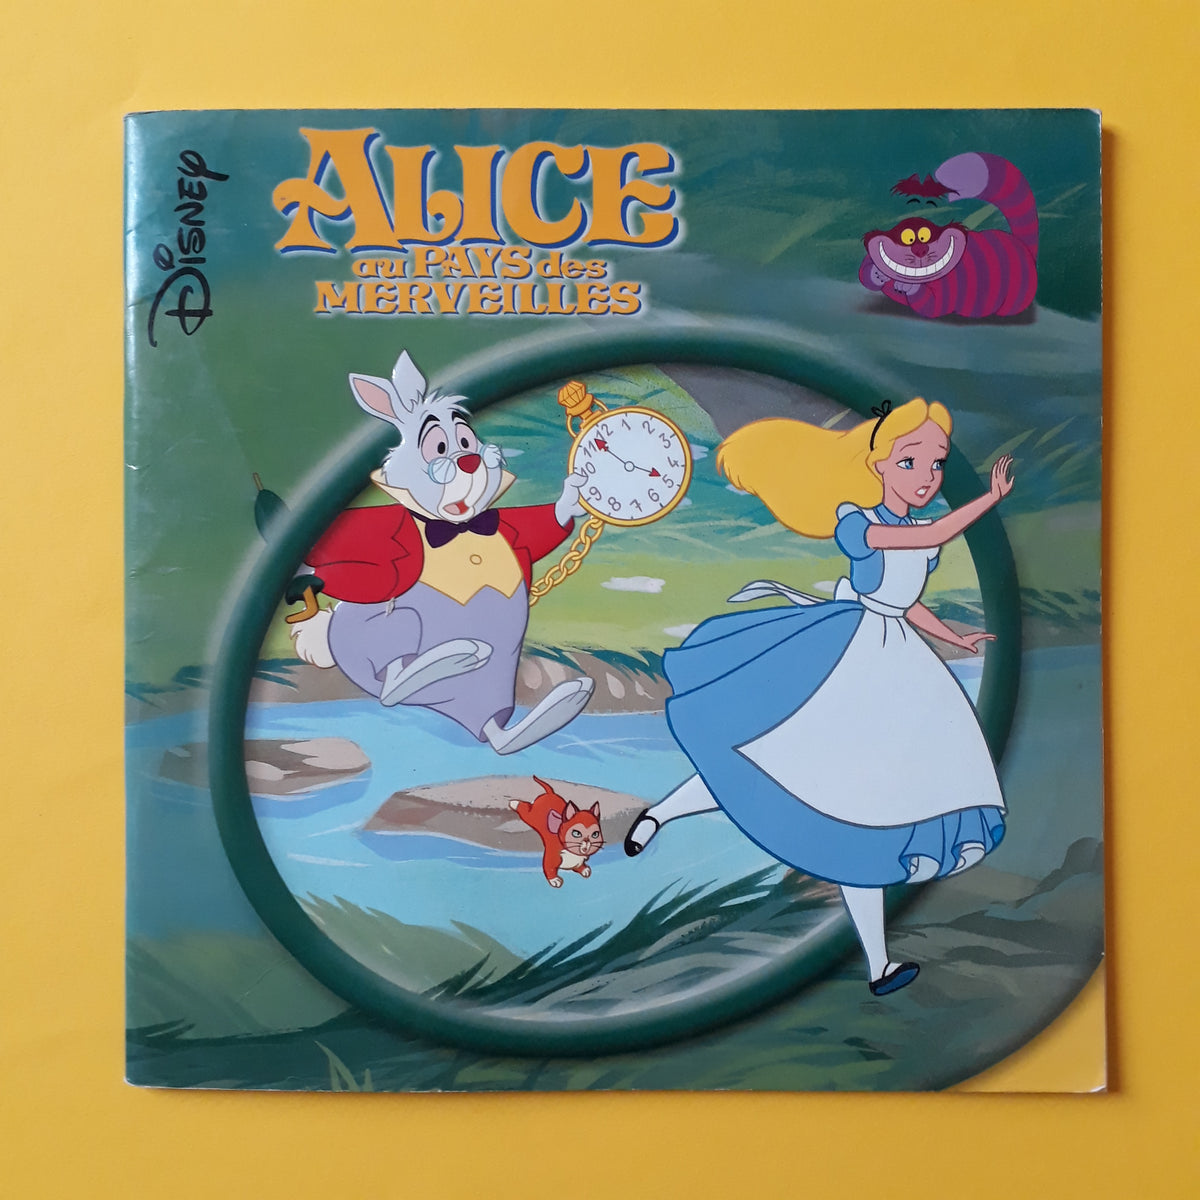 La mia prima biblioteca Disney - Alice nel paese delle meraviglie - n. 9 -  settimanale - EDICOLA SHOP